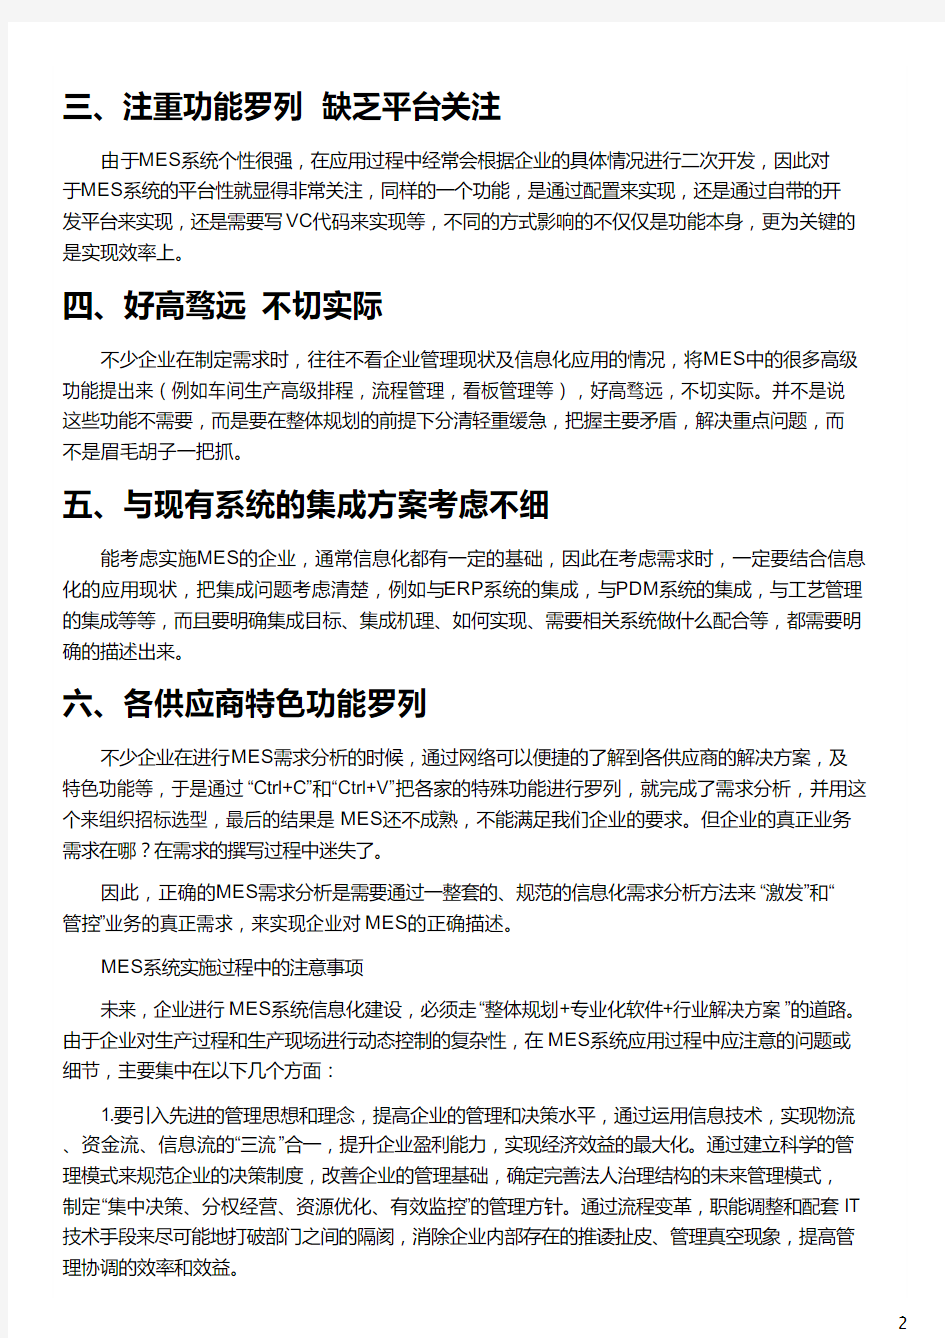 上海企业对MES系统需求分析的误区